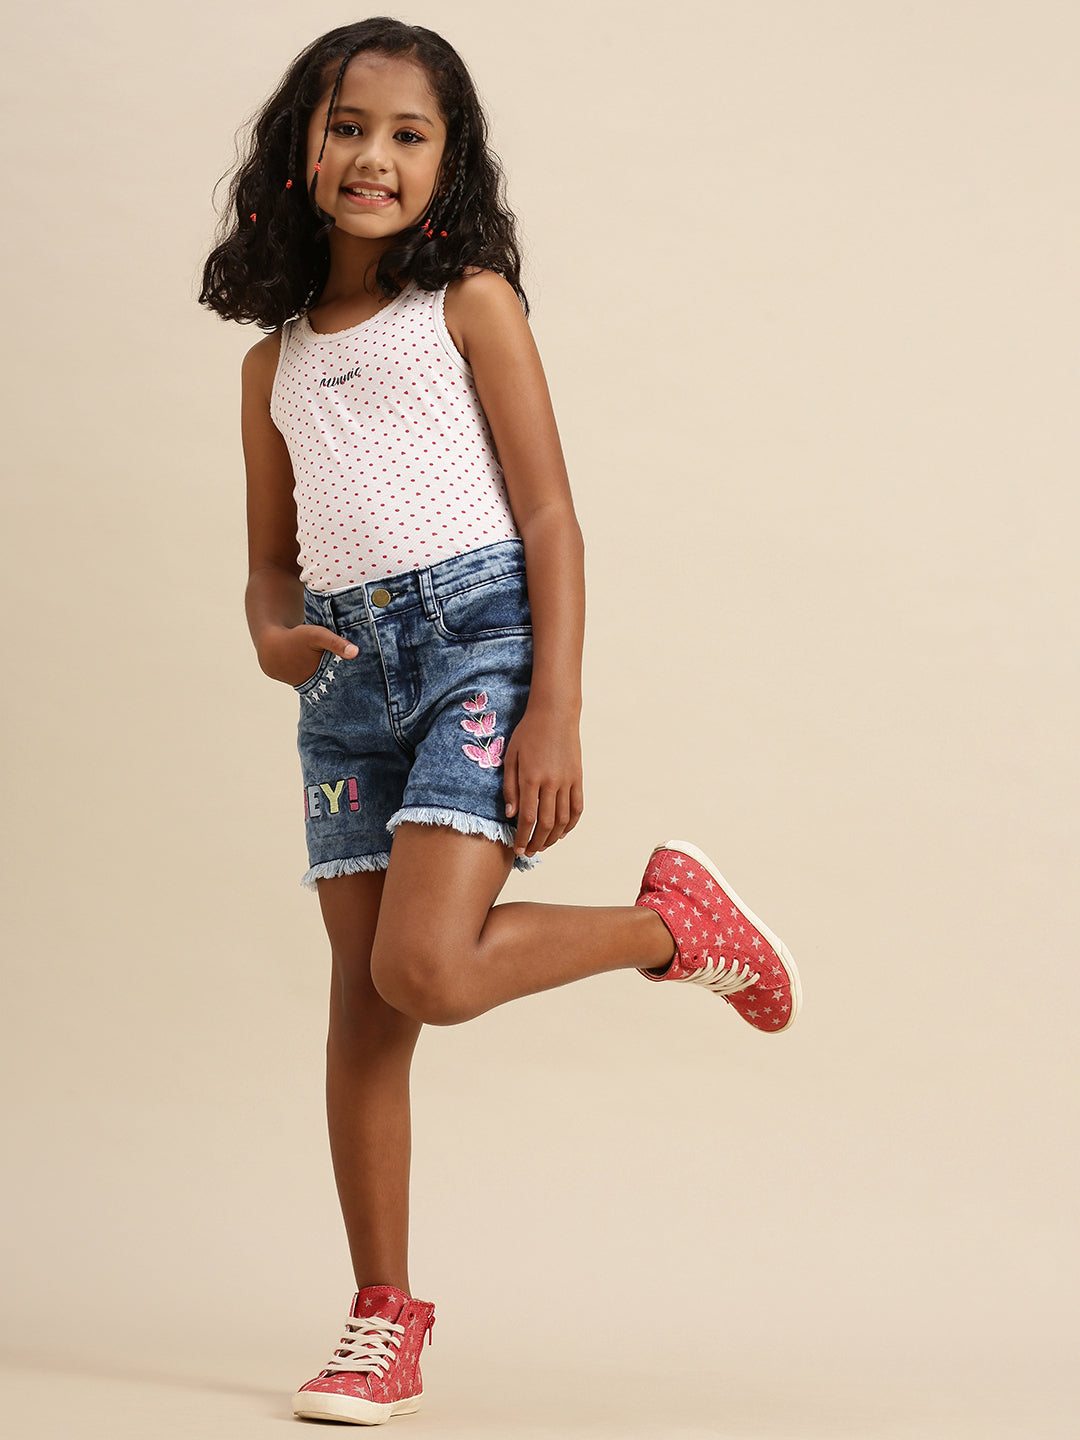 Cute Girl Short Denim Overalls Holding Stock Photo 591194435 | Shutterstock